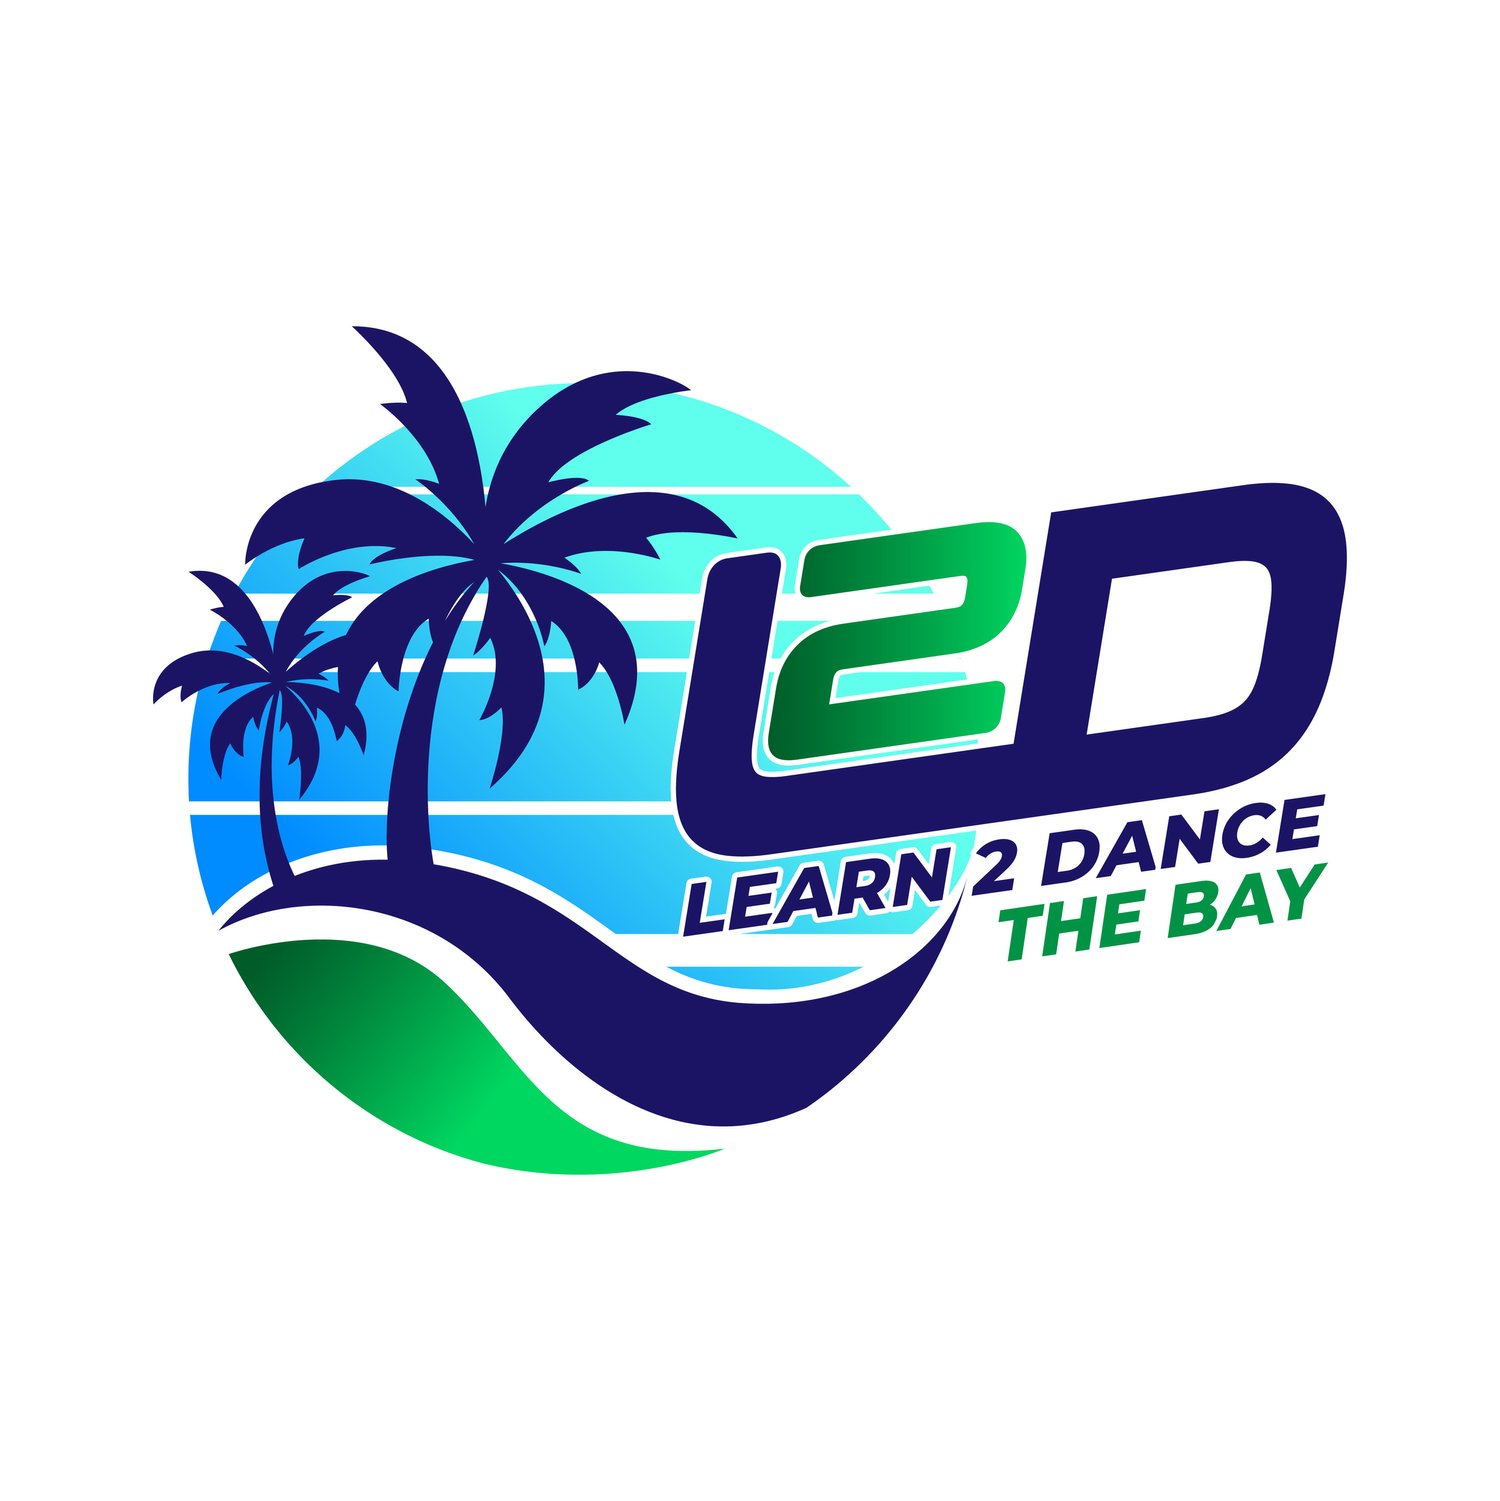 Learn 2 Dance The Bay